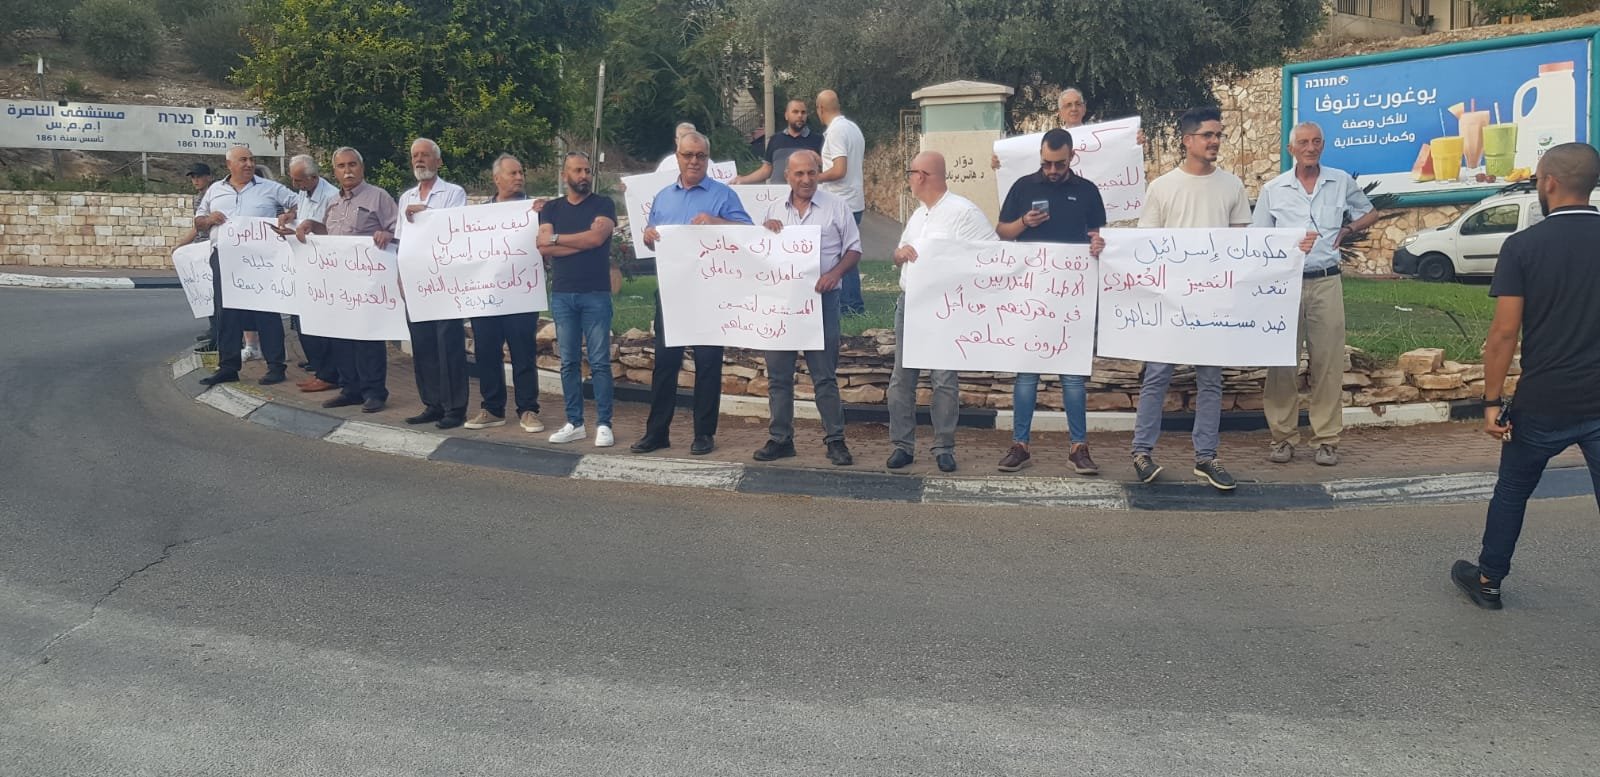 تظاهرة تضامن مع المستشفى الانجليزي بمبادرة جبهة الناصرة والحزب الشيوعي-2